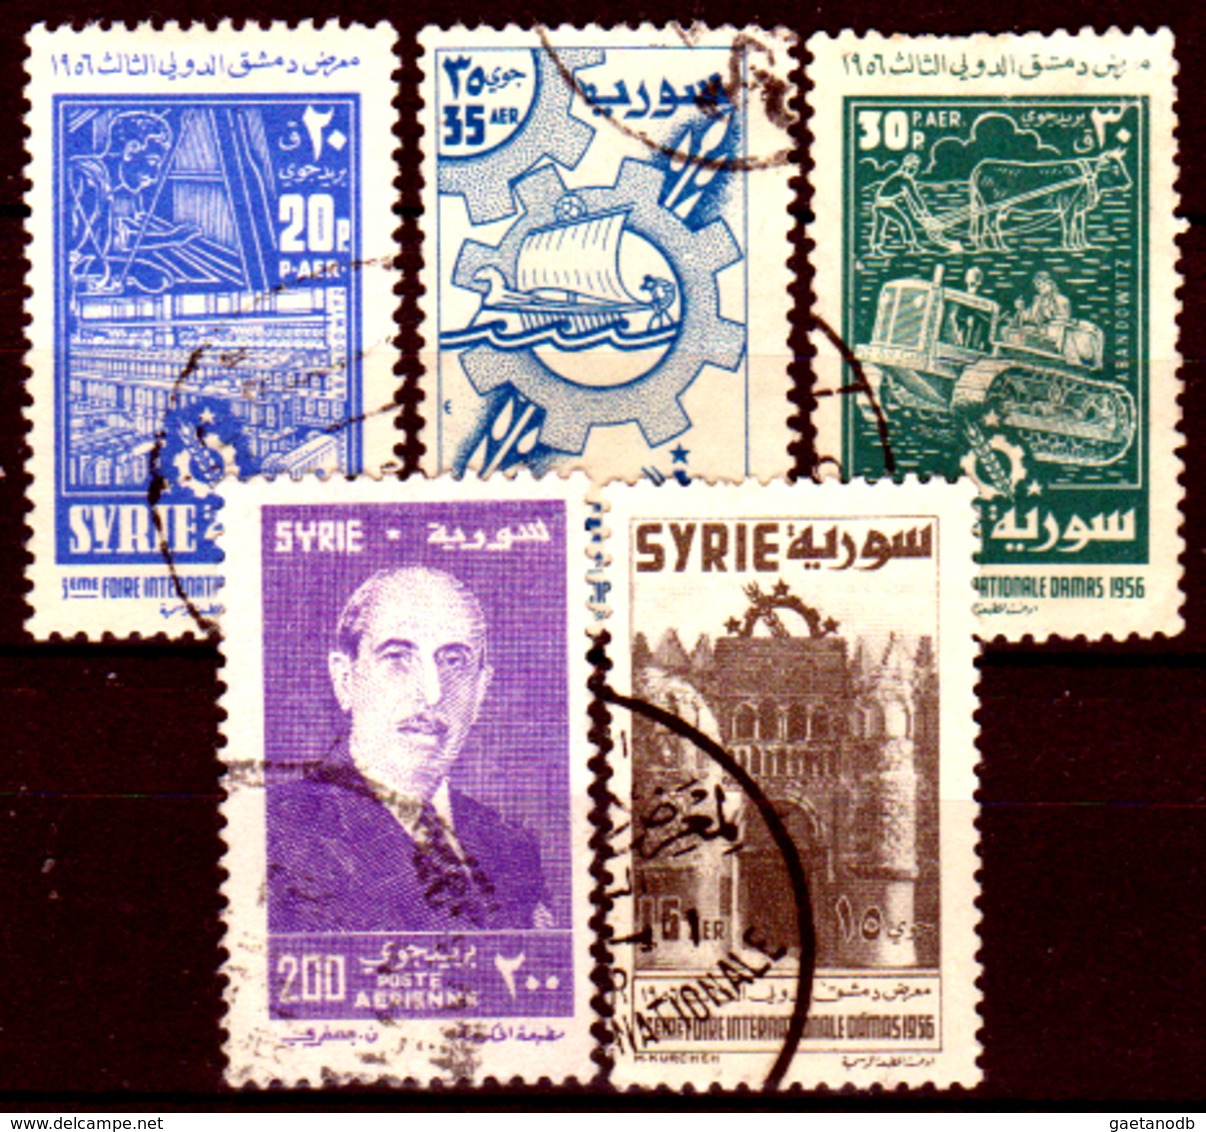 Siria-00167 - Posta Aerea 1956 (o) Used - Senza Difetti Occulti. - Syrië